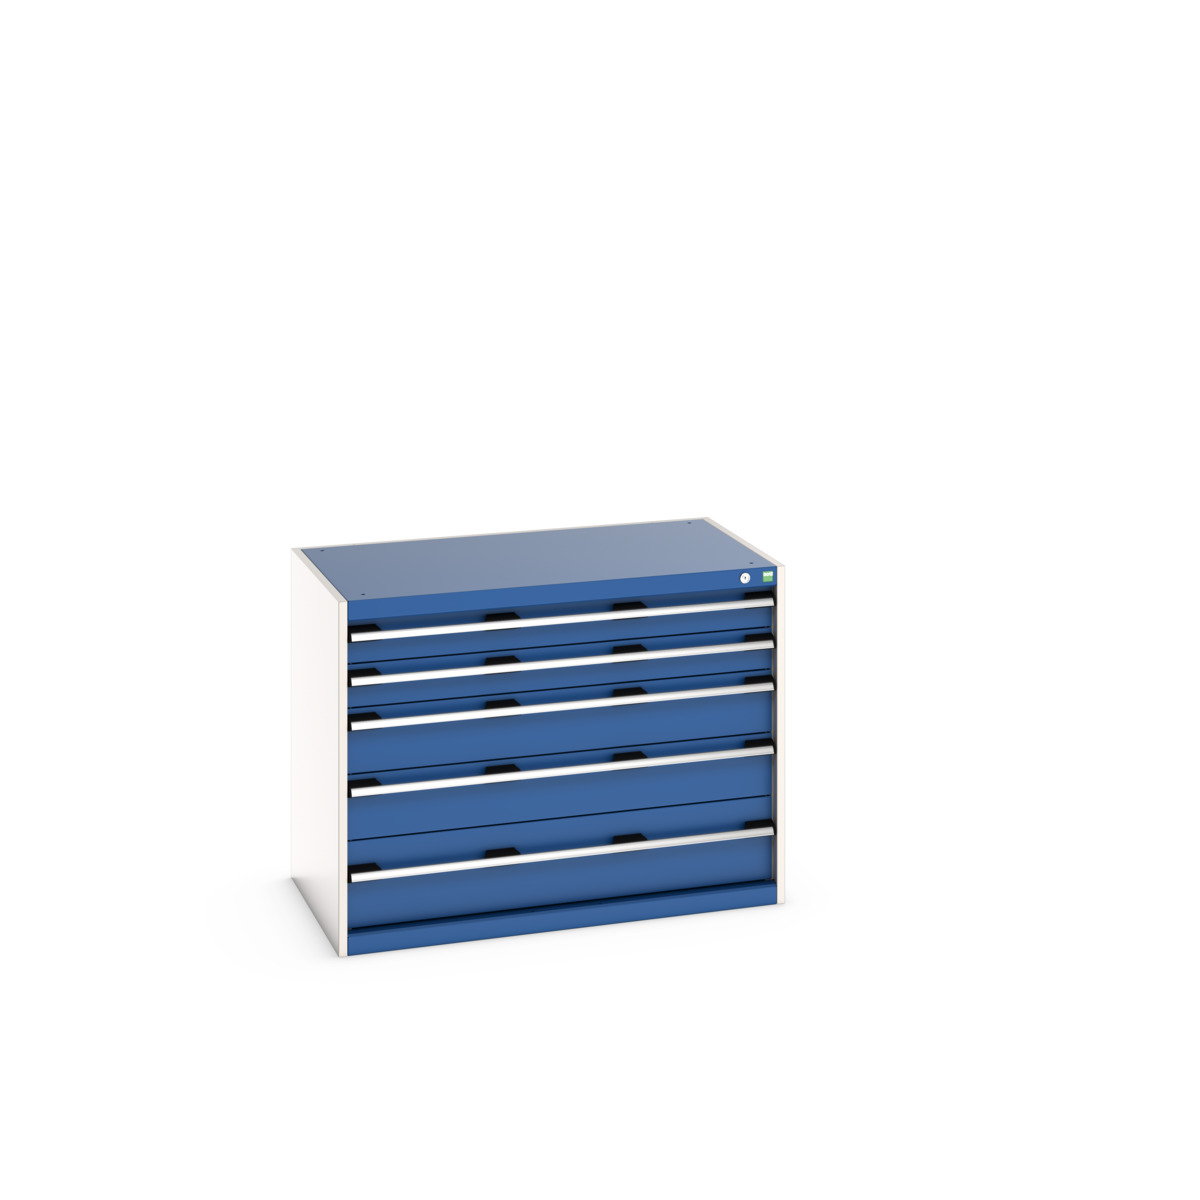 40021009.11V - cubio drawer cabinet